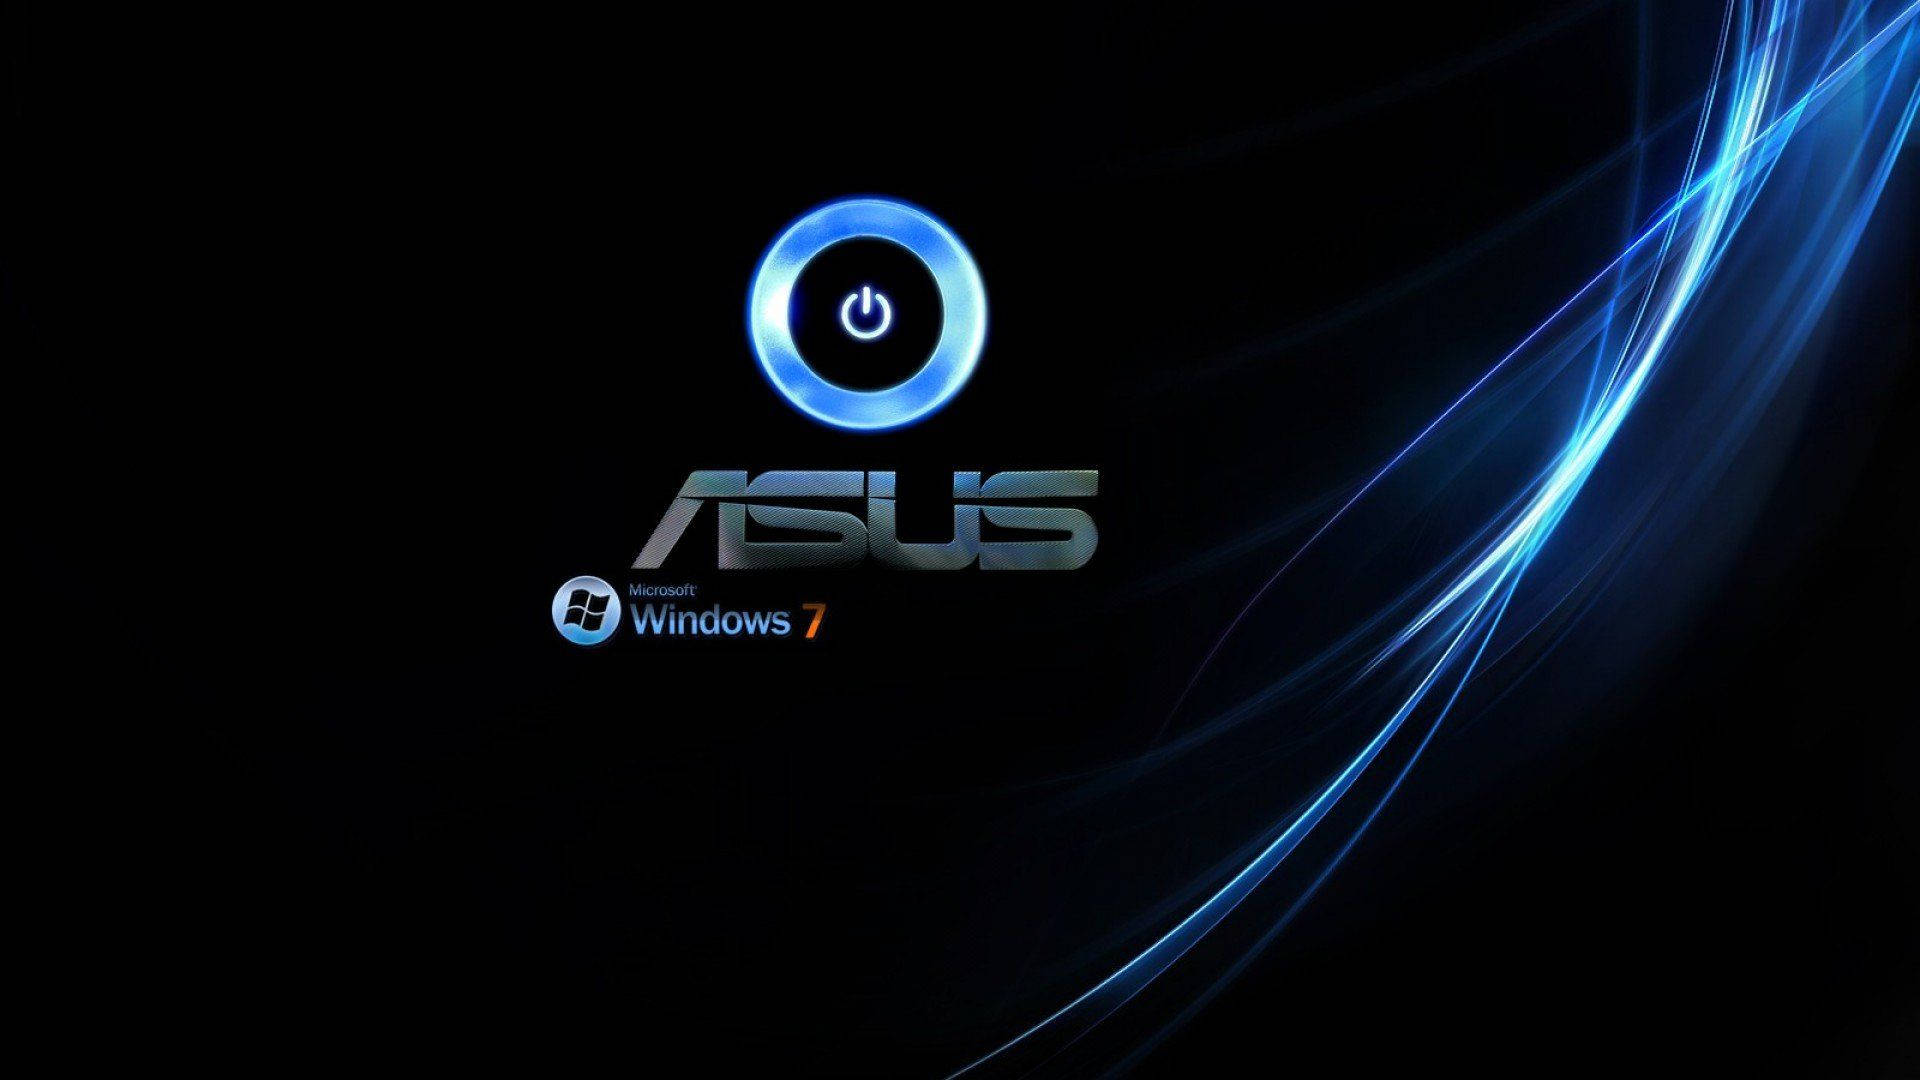 Asus Windows 7 Blue